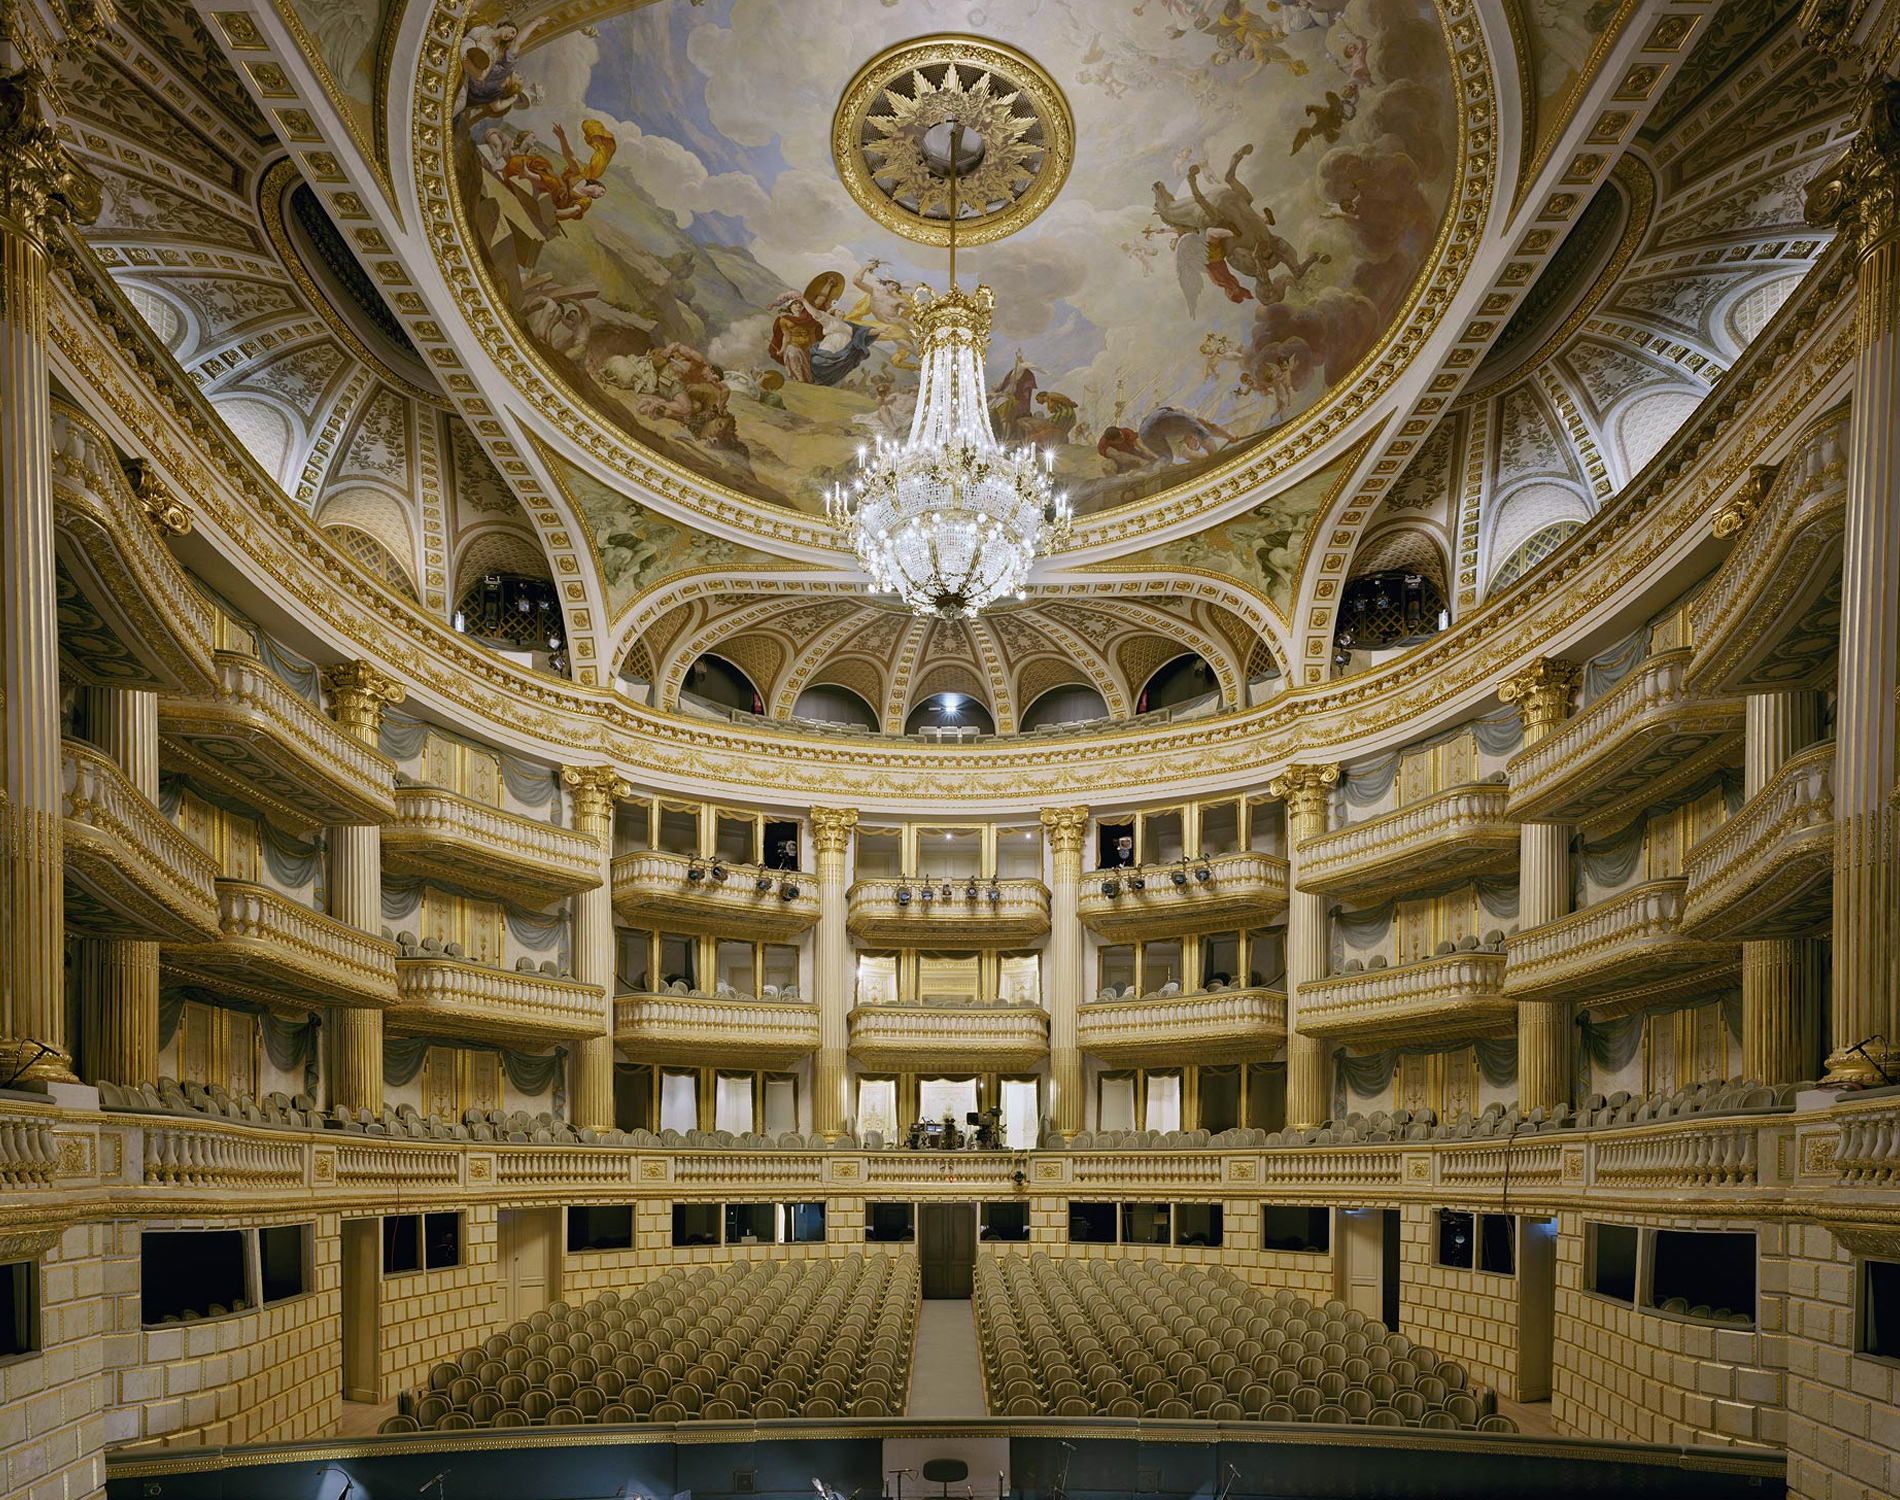 David Leventi Serie Photographie Opera Grand Théâtre Bordeaux France 2014